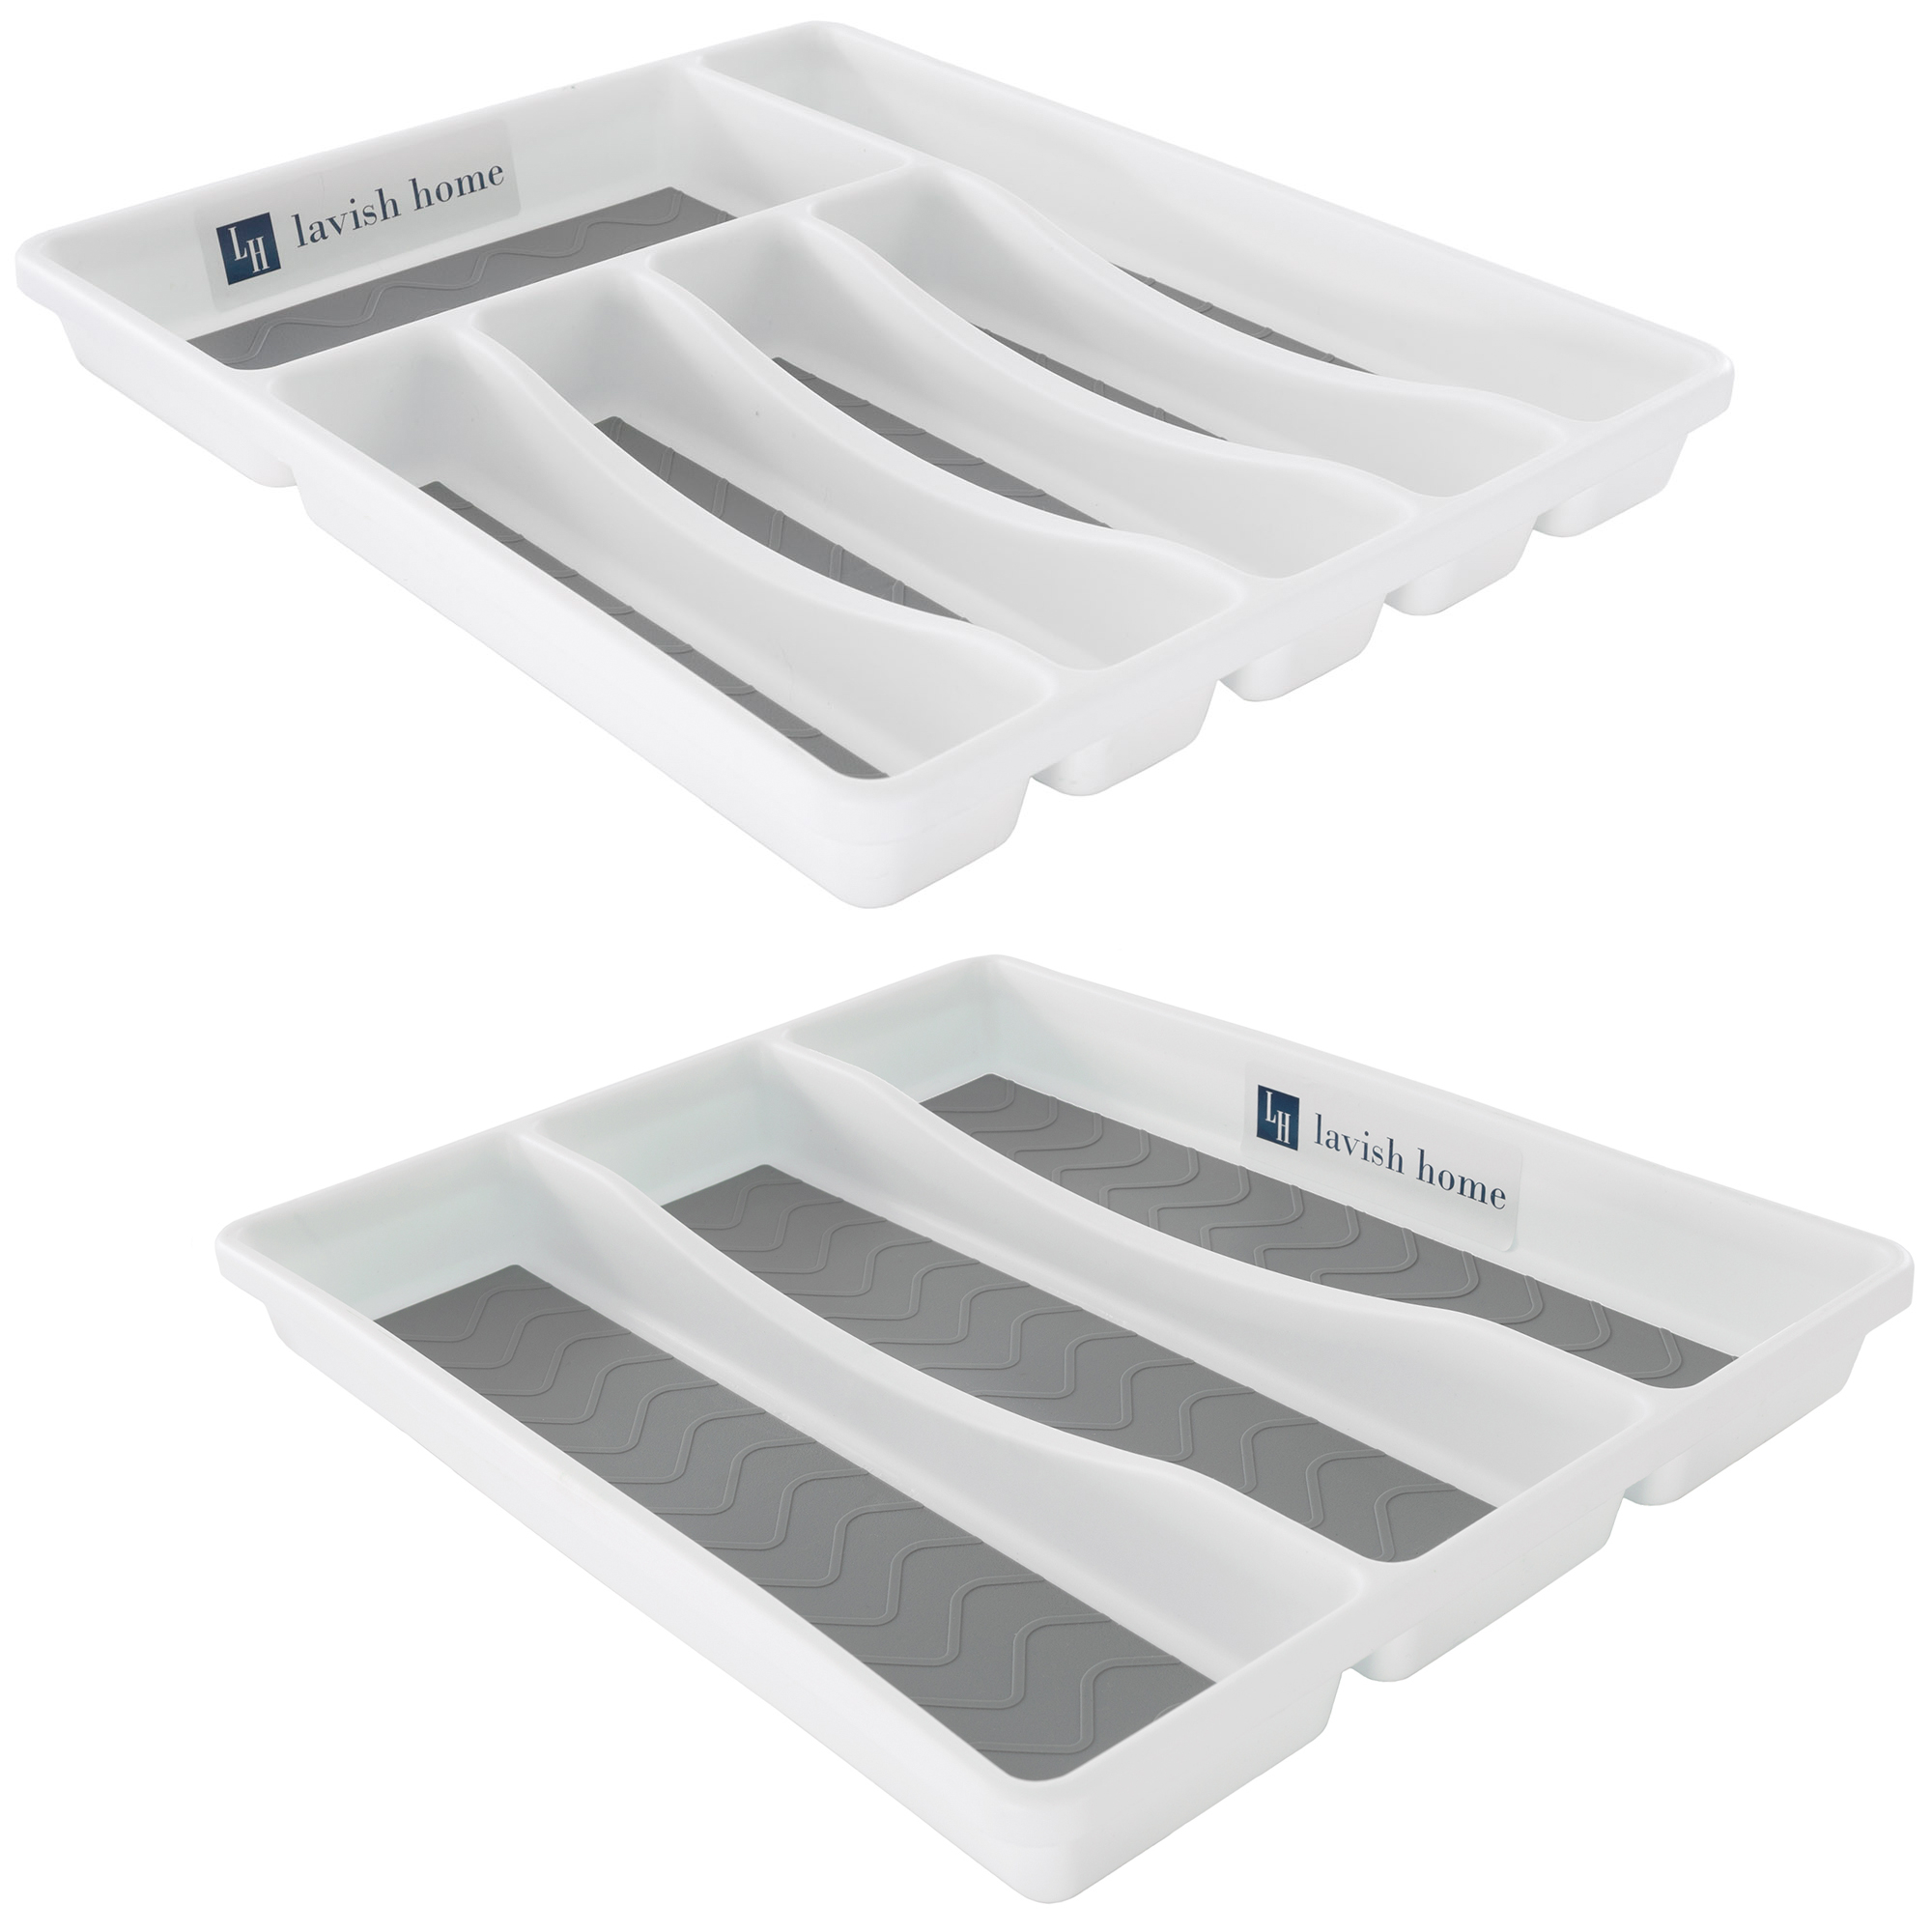 Silverware Drawer Flatware Utensils 2 Sized Kitchen Matching Organizers